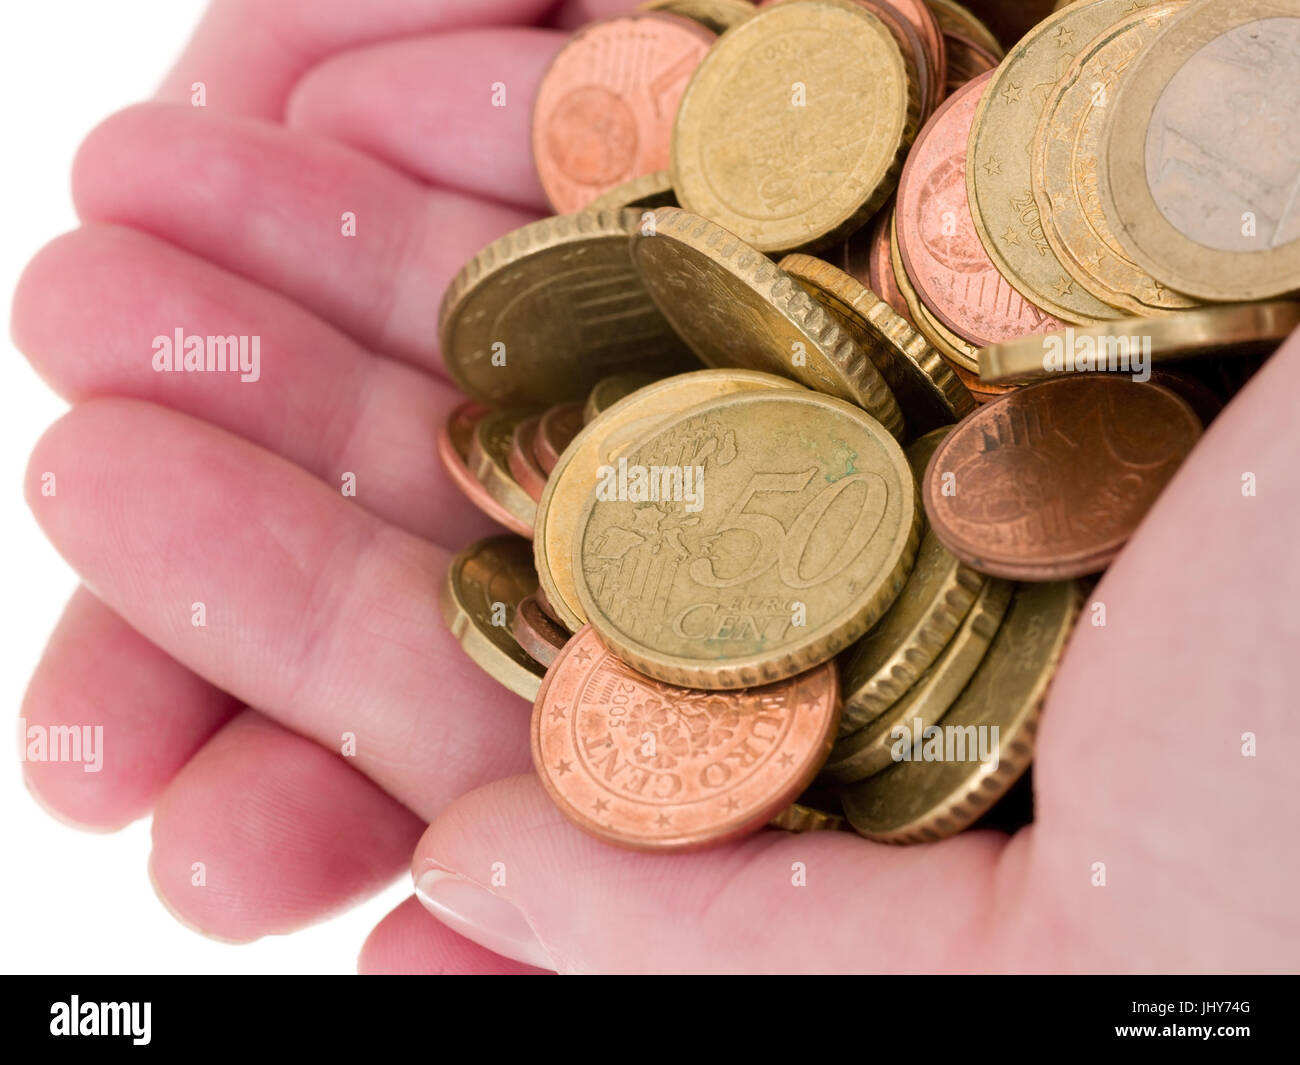 1 handful of eurocoins - hand with money, Eine Hand voll Euromünzen - hand with money Stock Photo